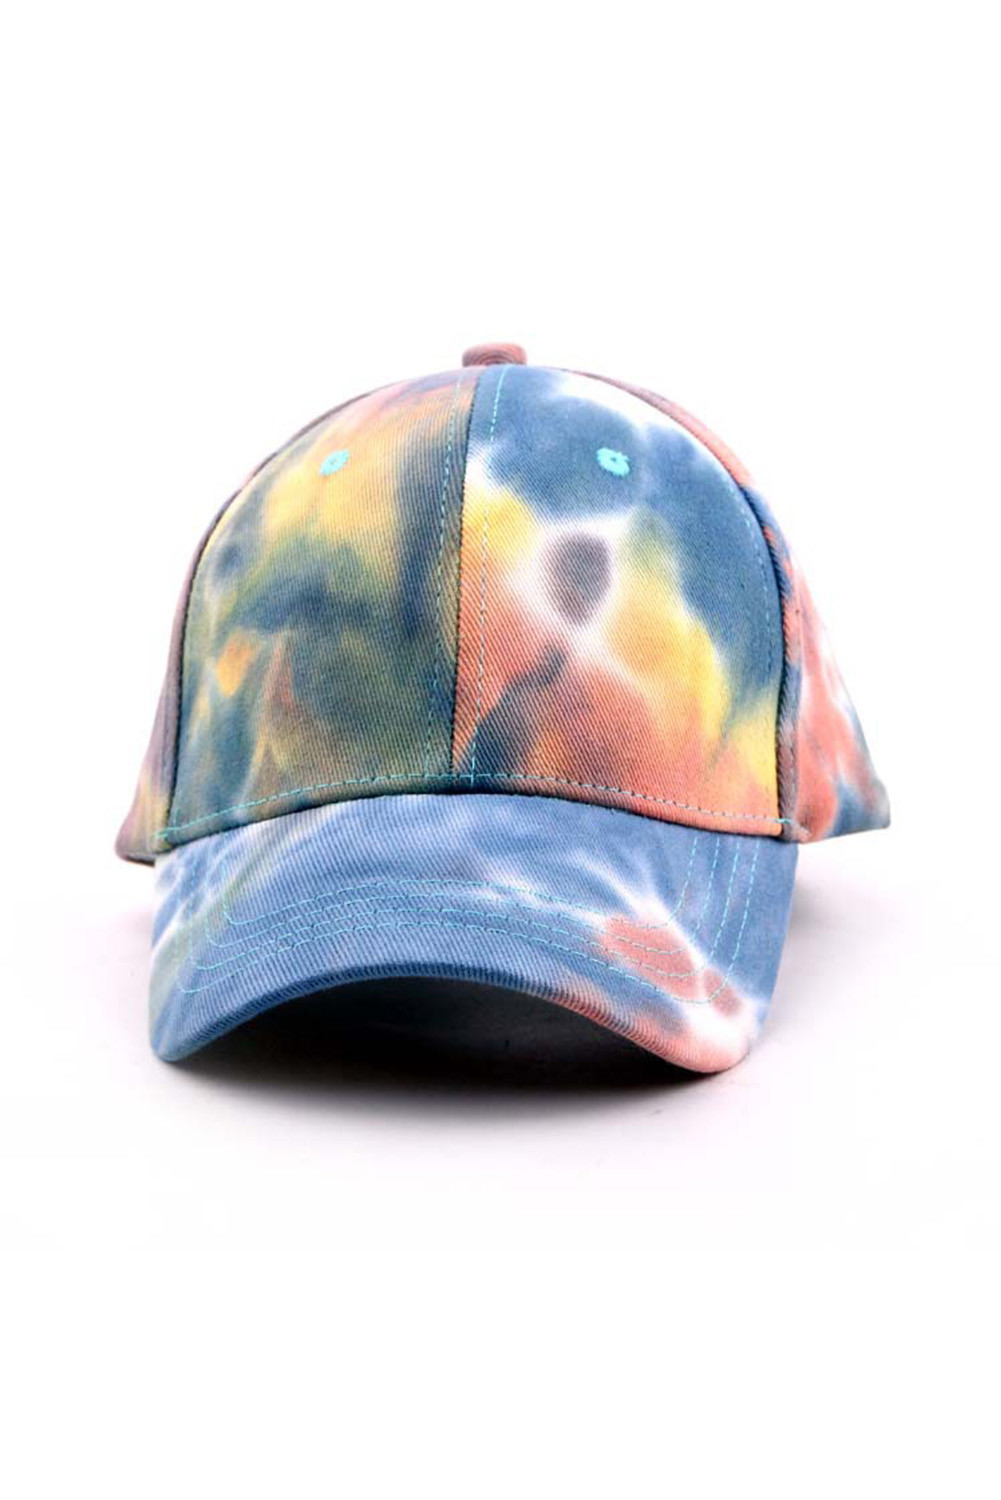 SHEWIN Multicolor Tie-dye Print Outdoor Baseball Cap - SHEWIN